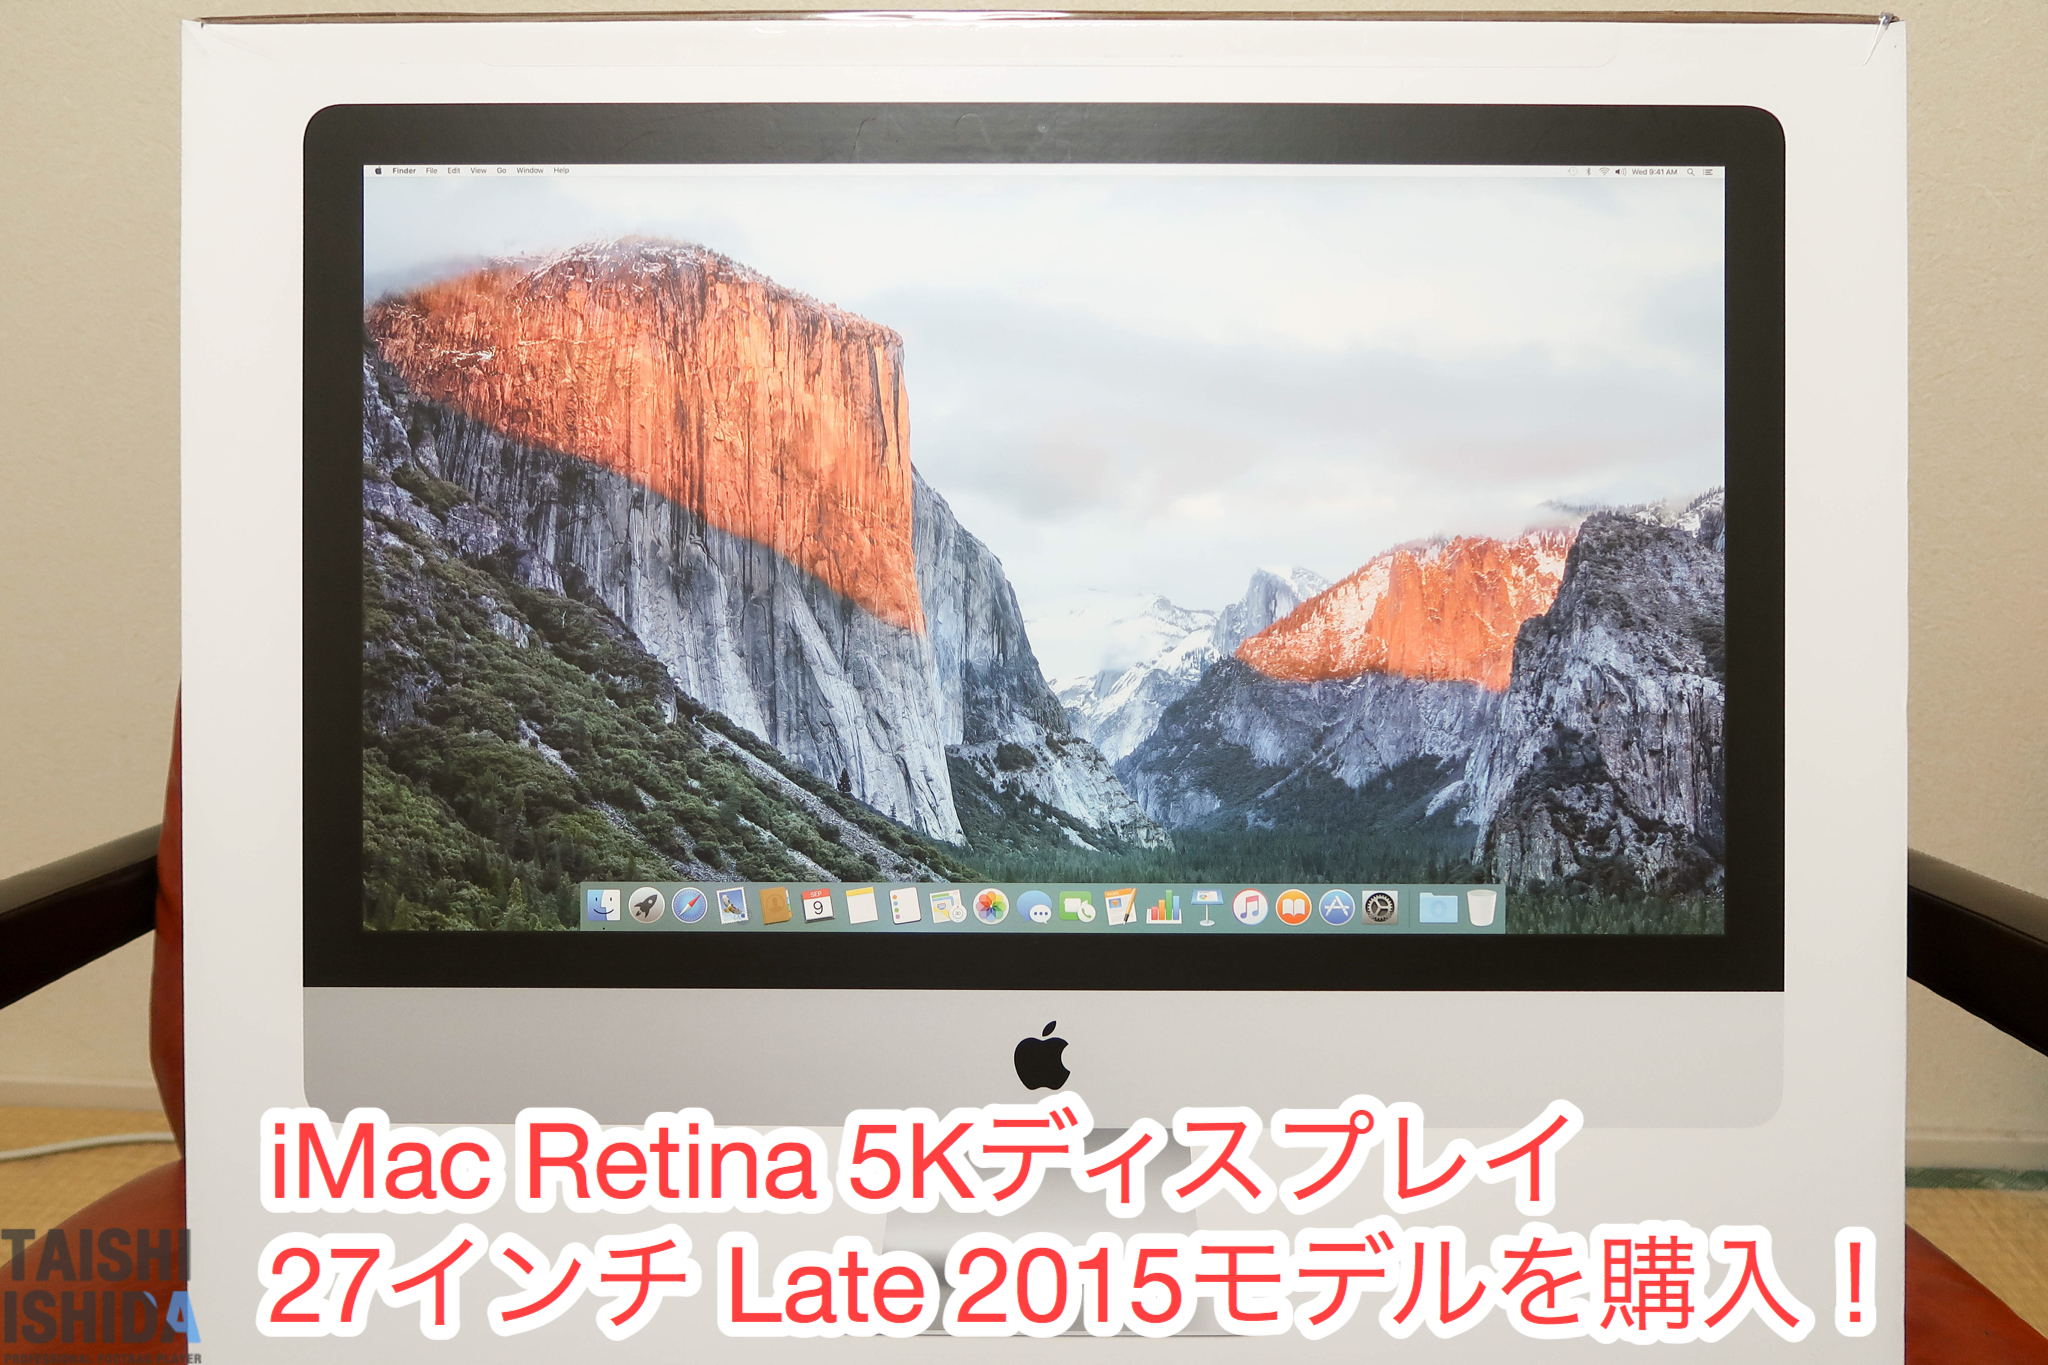 Apple iMac 5k 27インチ late2015 vesaマウントモデル